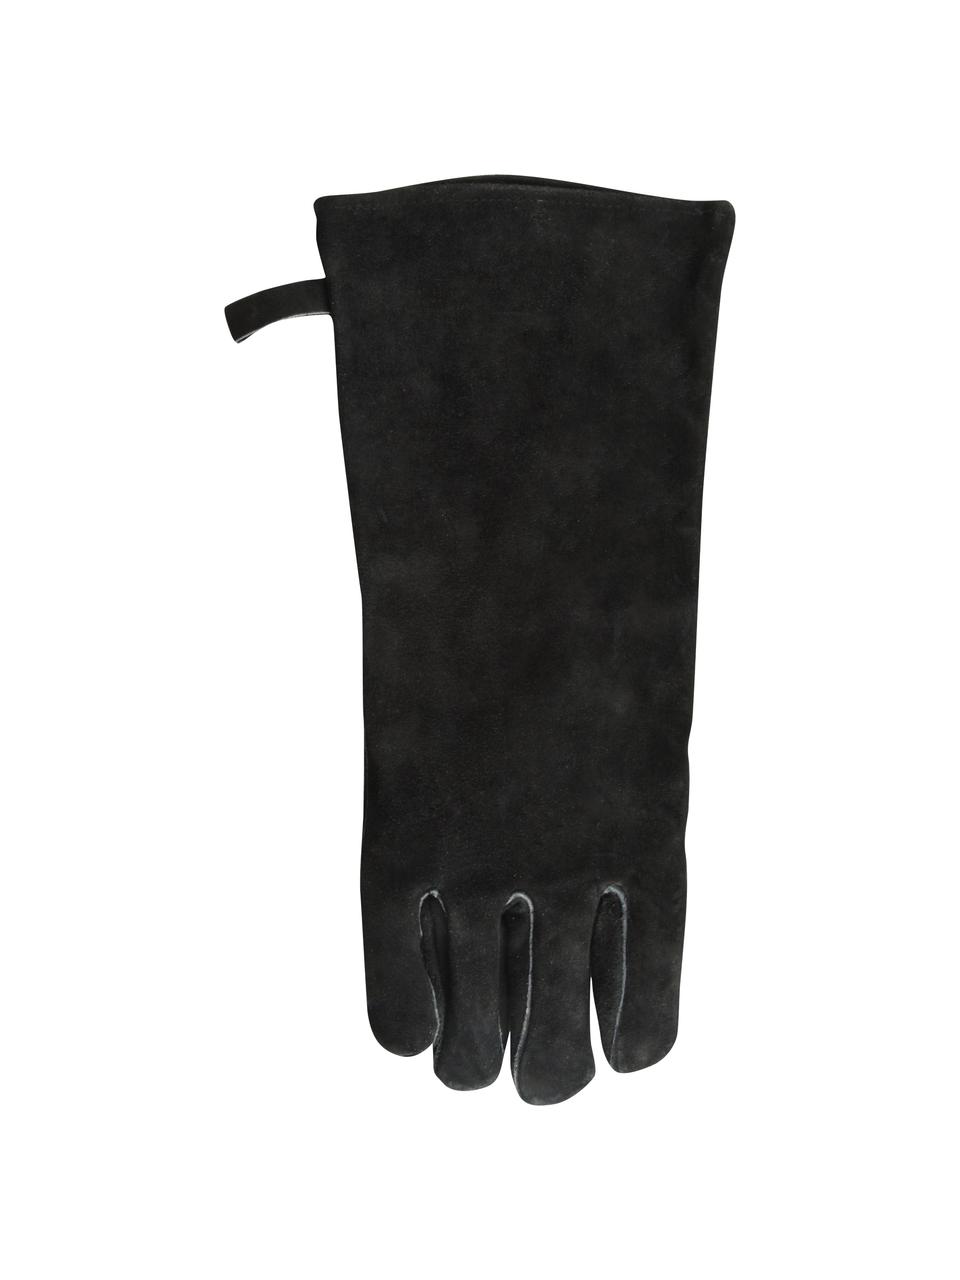 Grilovací rukavice Protect, 65 % hovězí štípenka, 25 % polyester, 10 % bavlna, Černá, Š 19 cm, V 41 cm